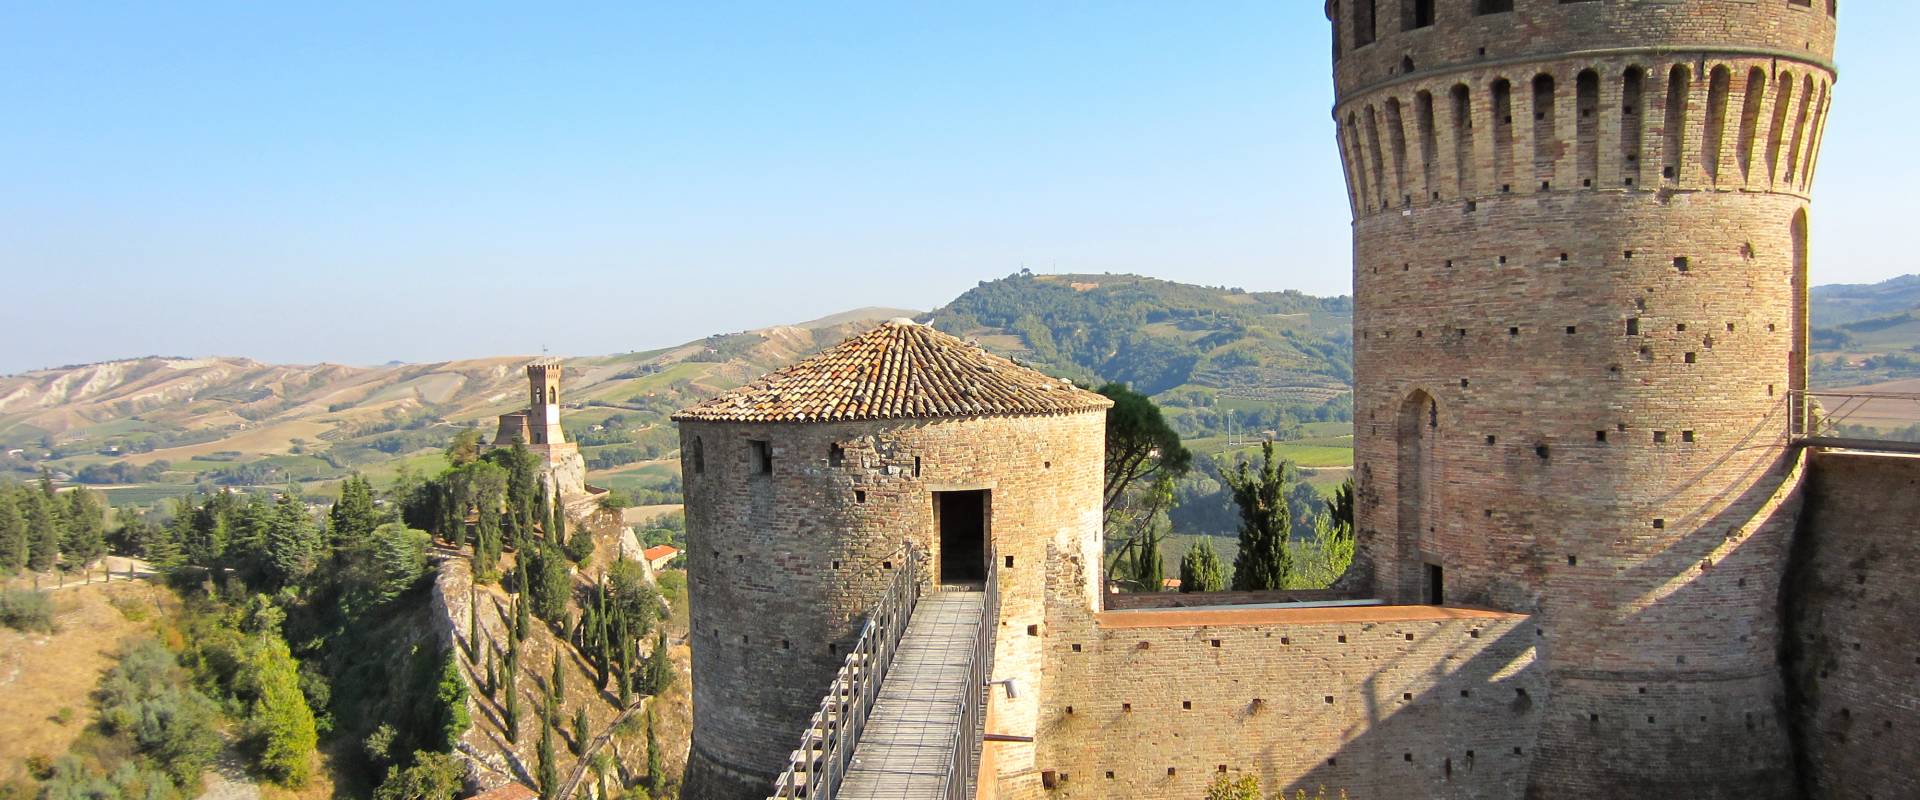 Rocca di Brisighella photo by Laghi Daniela